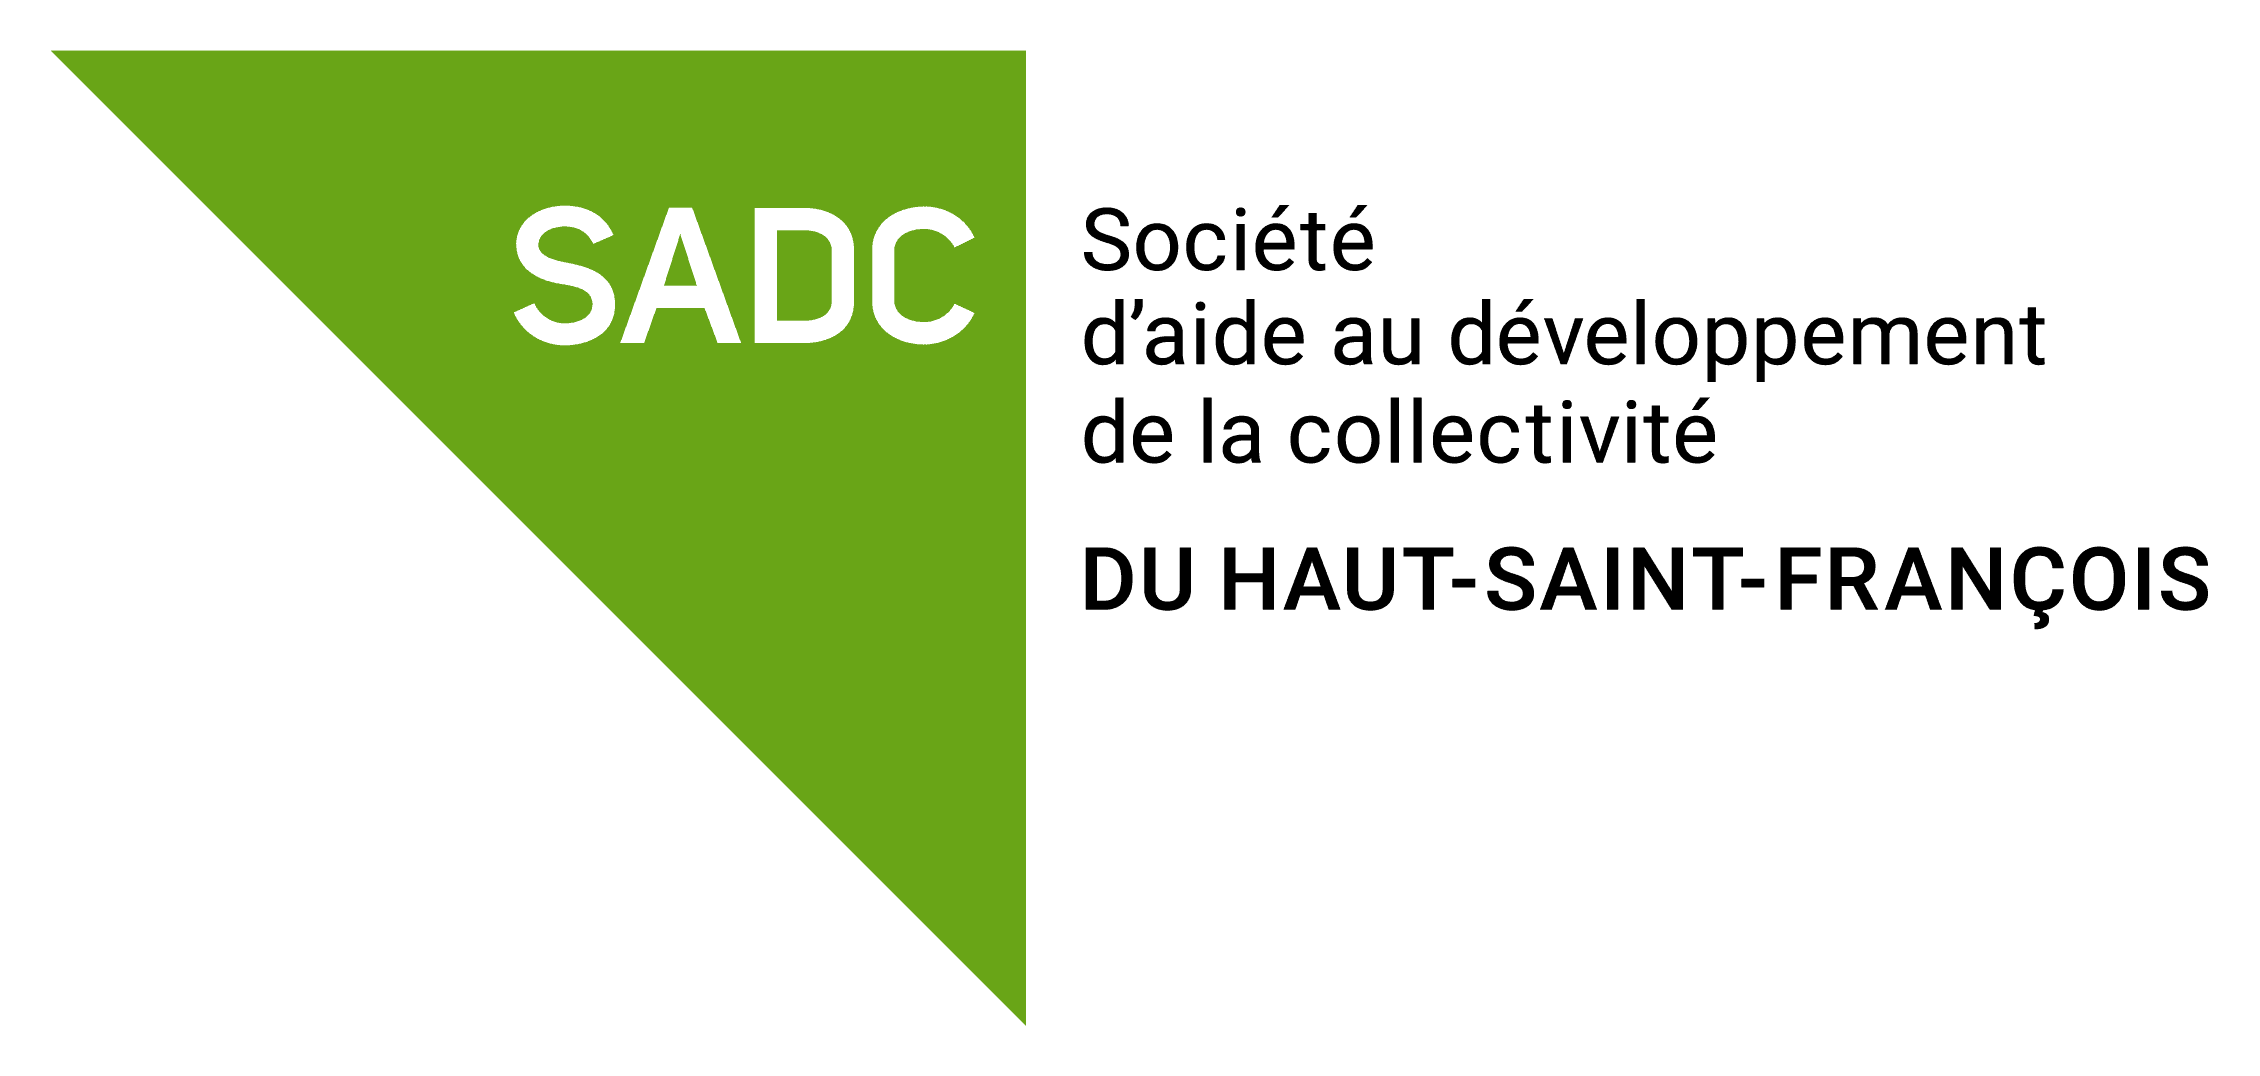 Ressource_sadc-haut-saint-francois_Noir